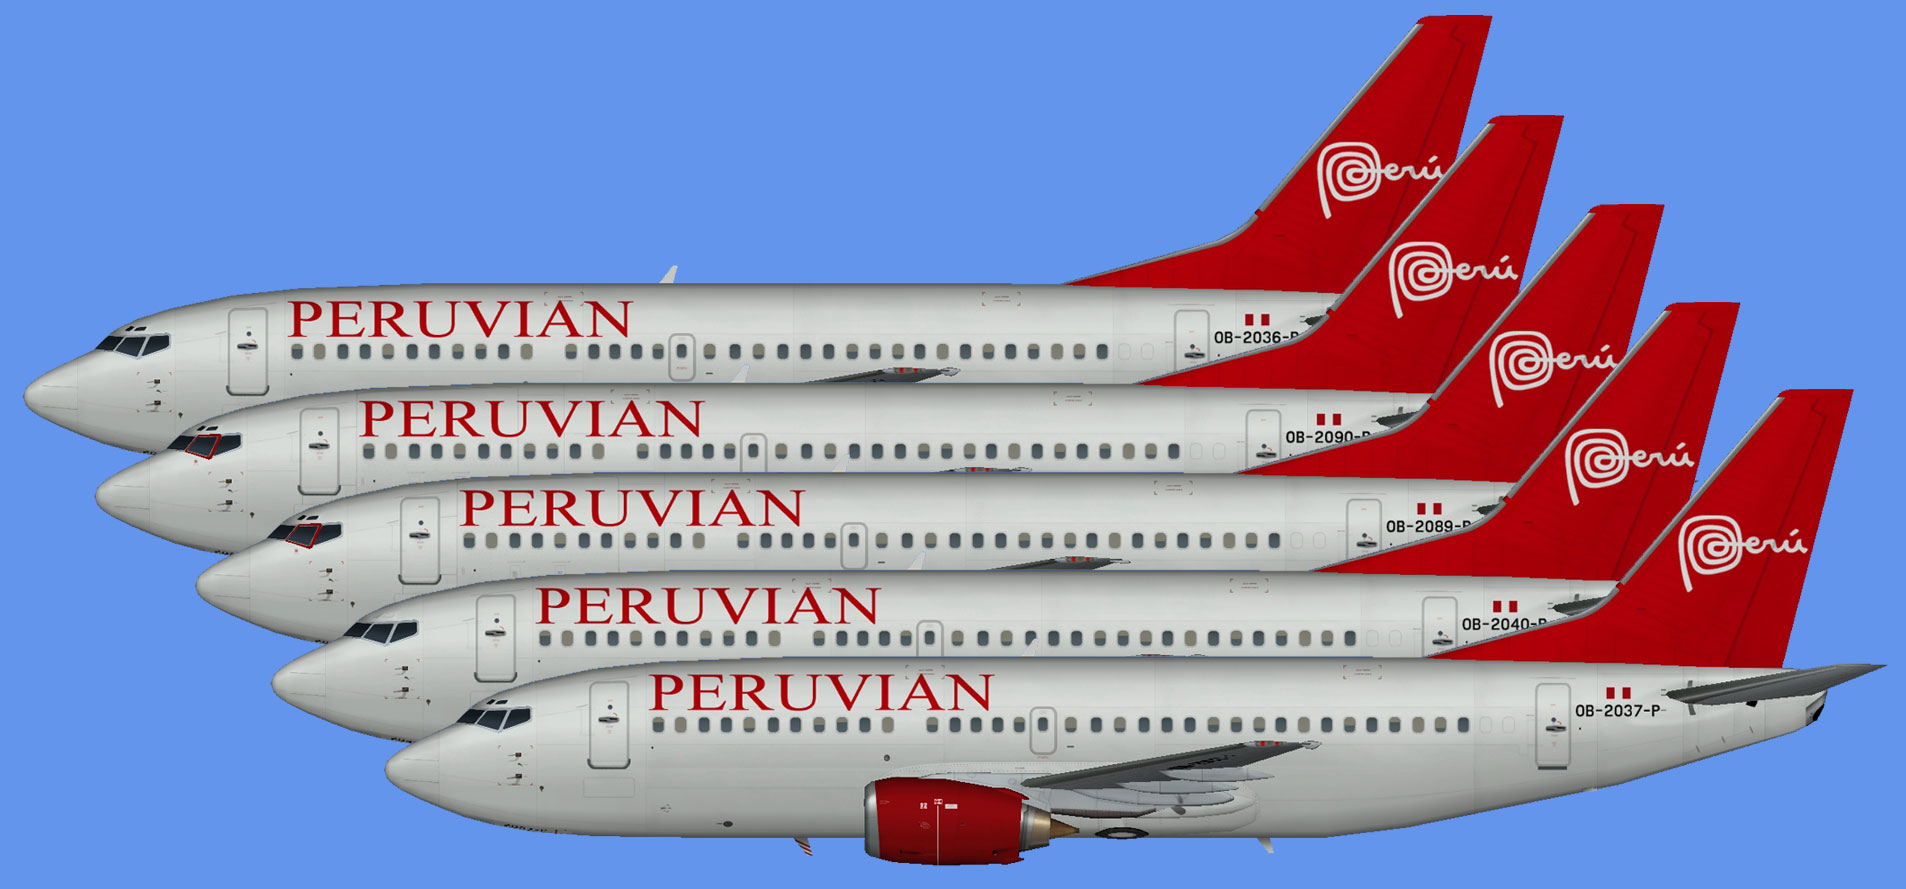 Peruvian Airlines Boeing 737-300